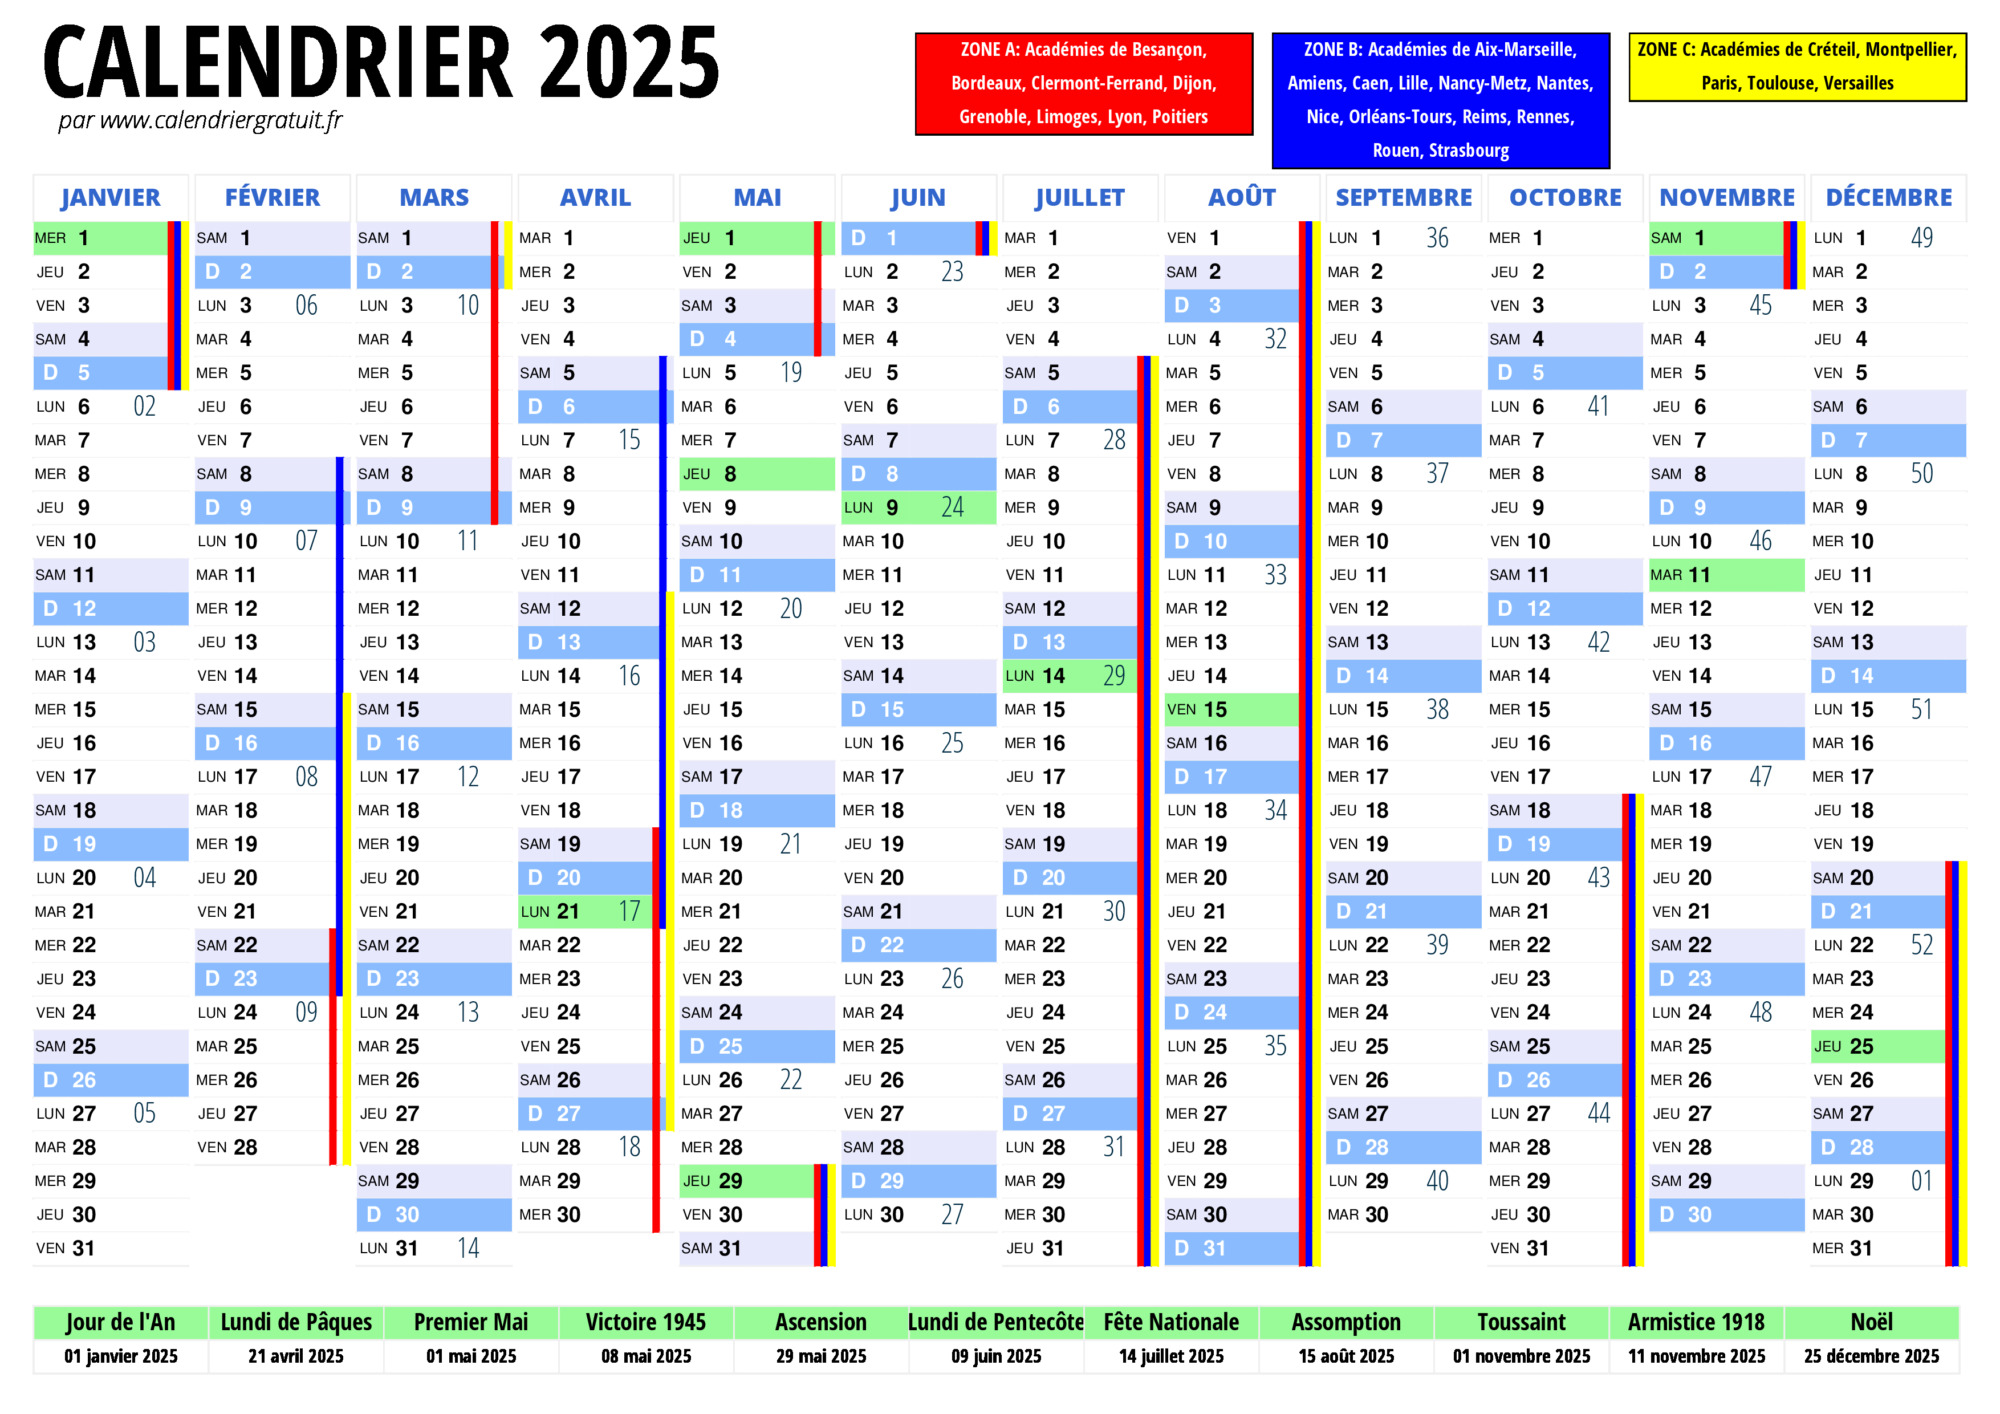 Agenda Mensuel 2024-2025: Planificateur Mensuel 2 ans avec un Mois sur deux  Pages du 1 Janvier 2024 au 31 Decembre 2025 (French Edition)